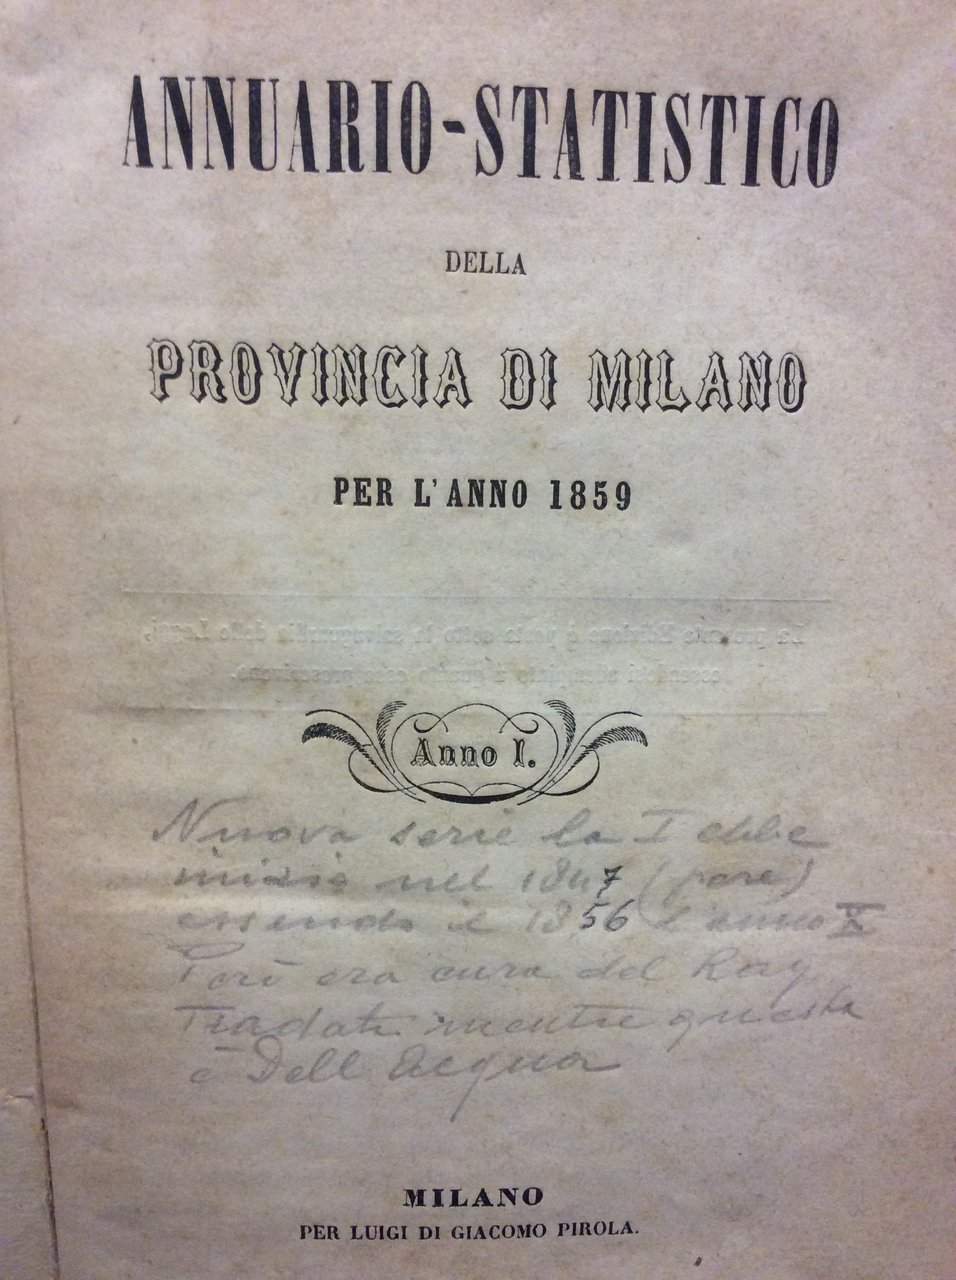 ANNUARIO STATISTICO DELLA PROVINCIA DI MILANO PER L'ANNO 1859.